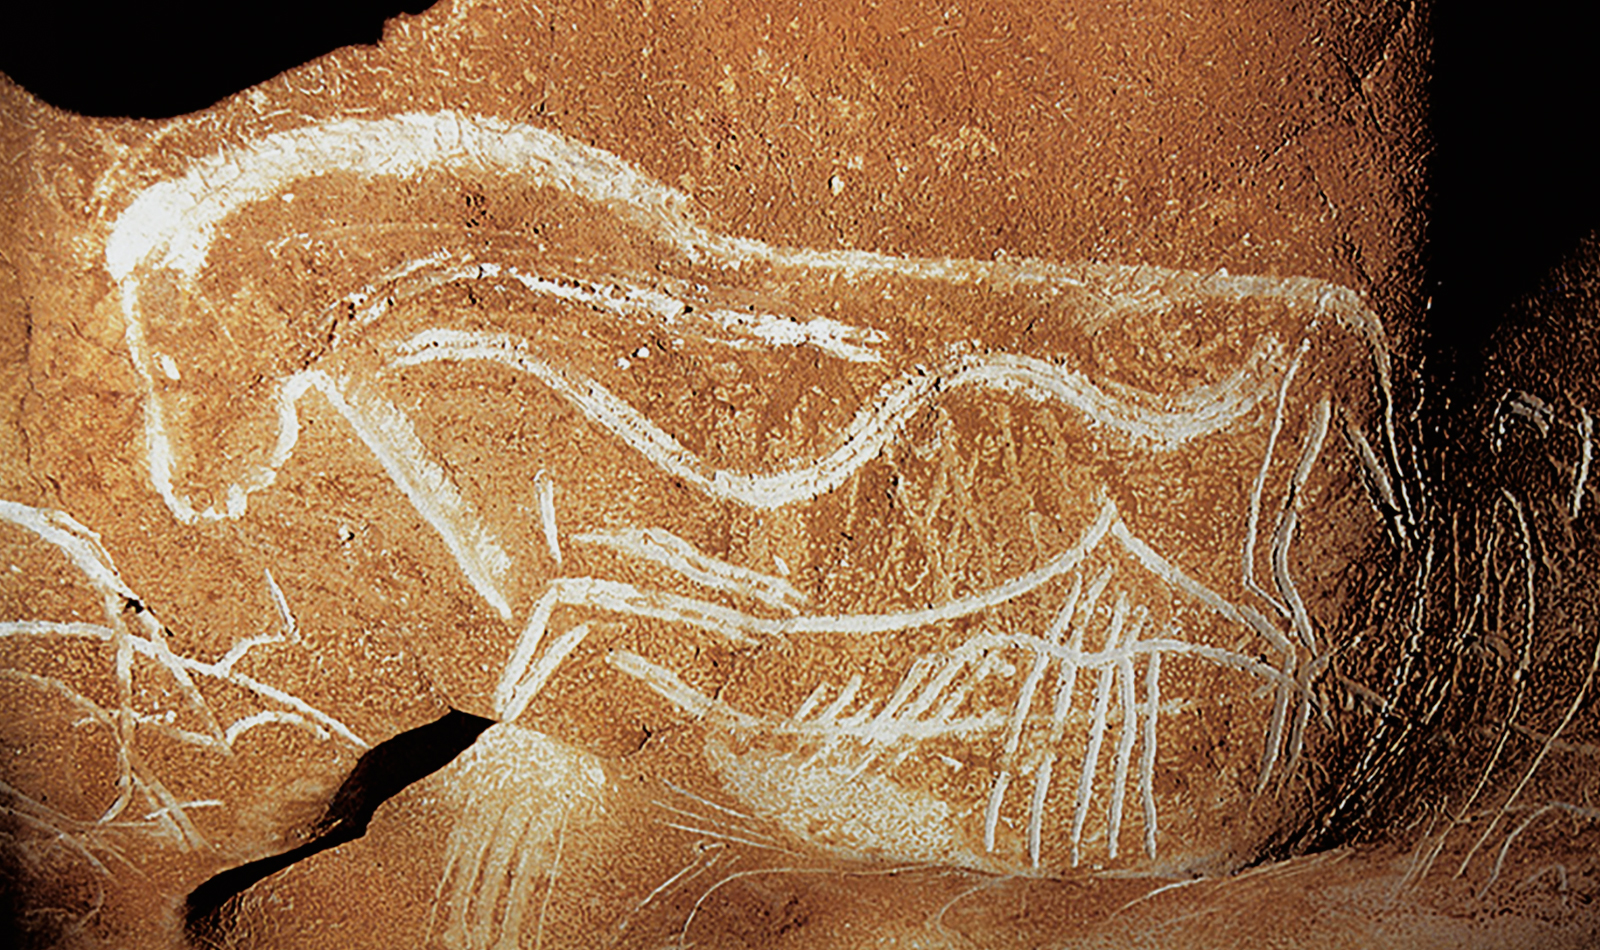 Horse Chauvet Cave Paintings Rock Art France Bradshaw Foundation